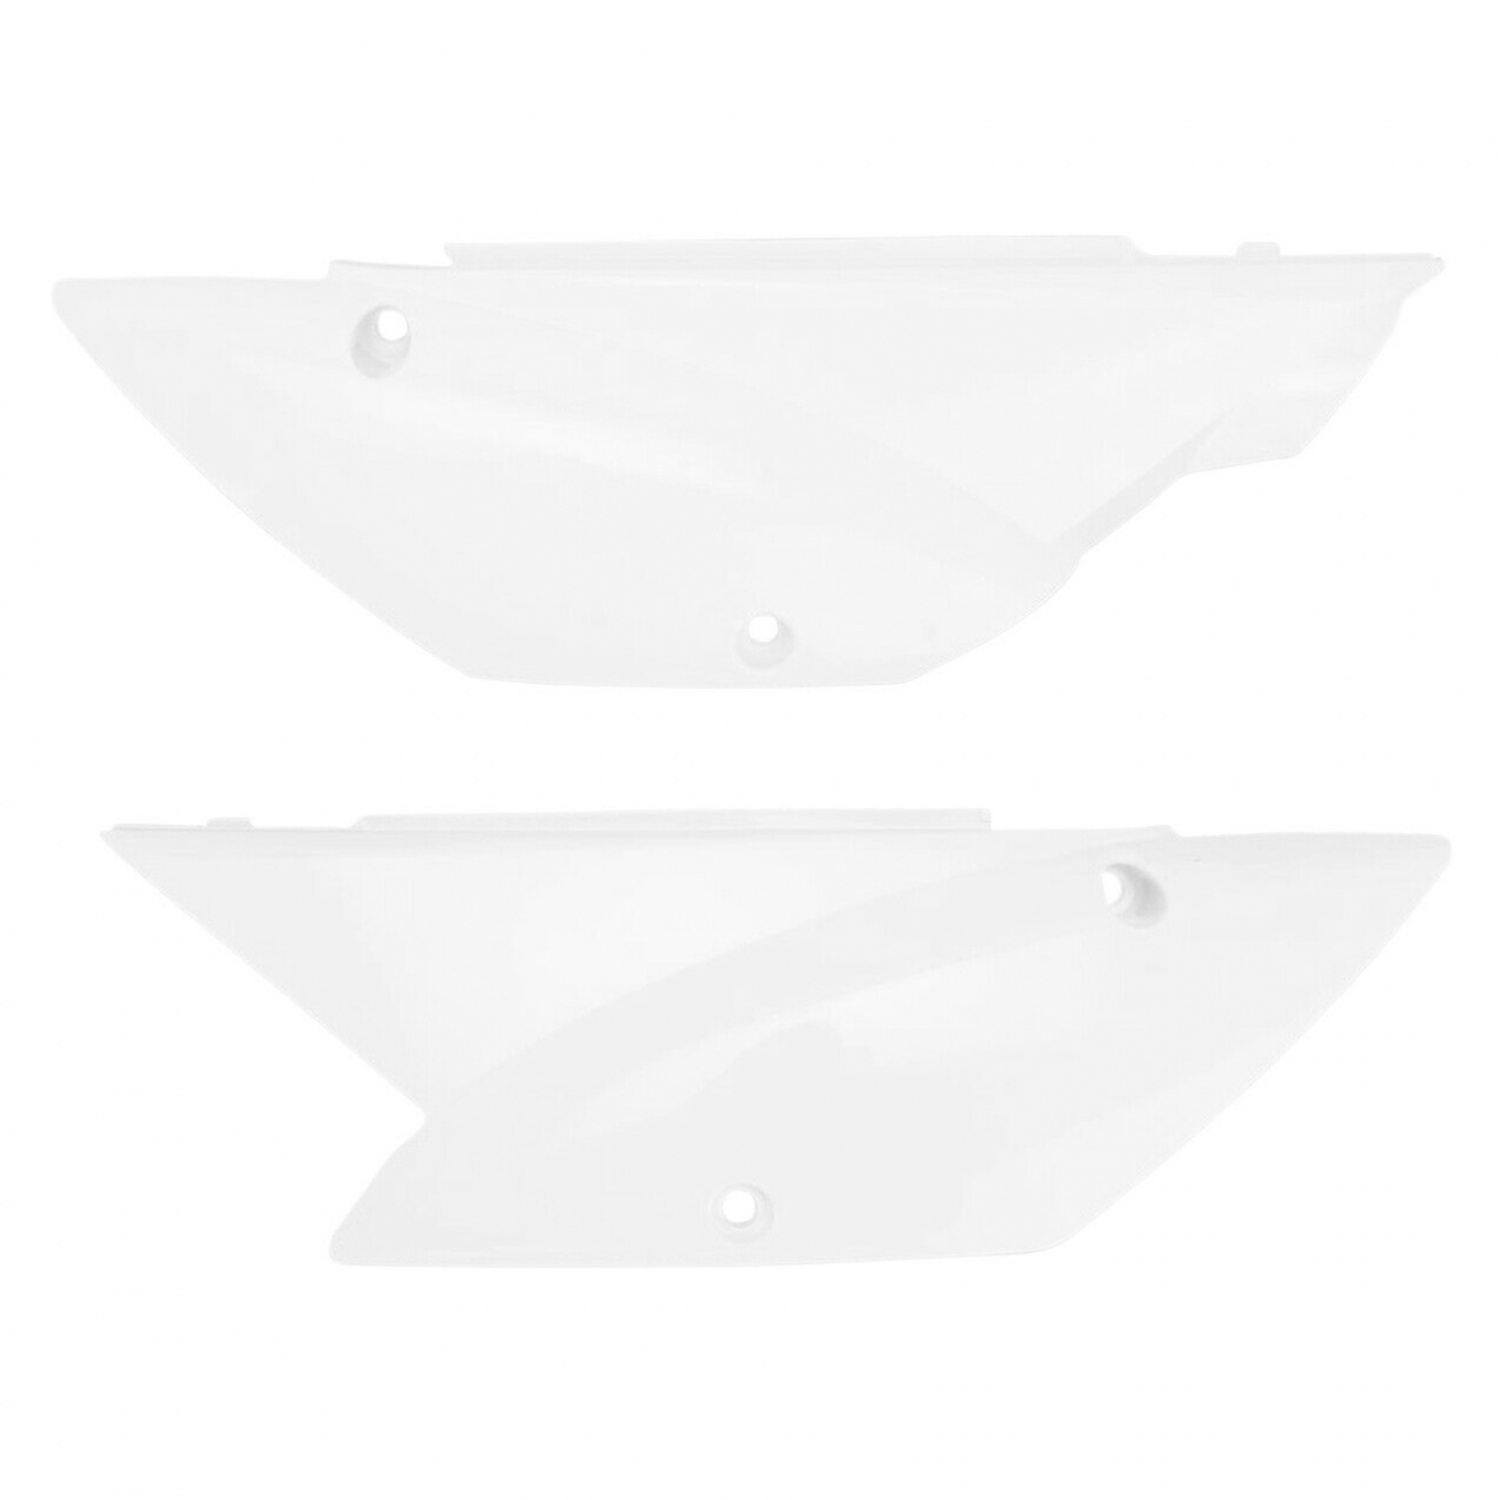 Obrázek produktu DREUMEX SPECIAL čisticí pasta na ruce - bílá 15 l